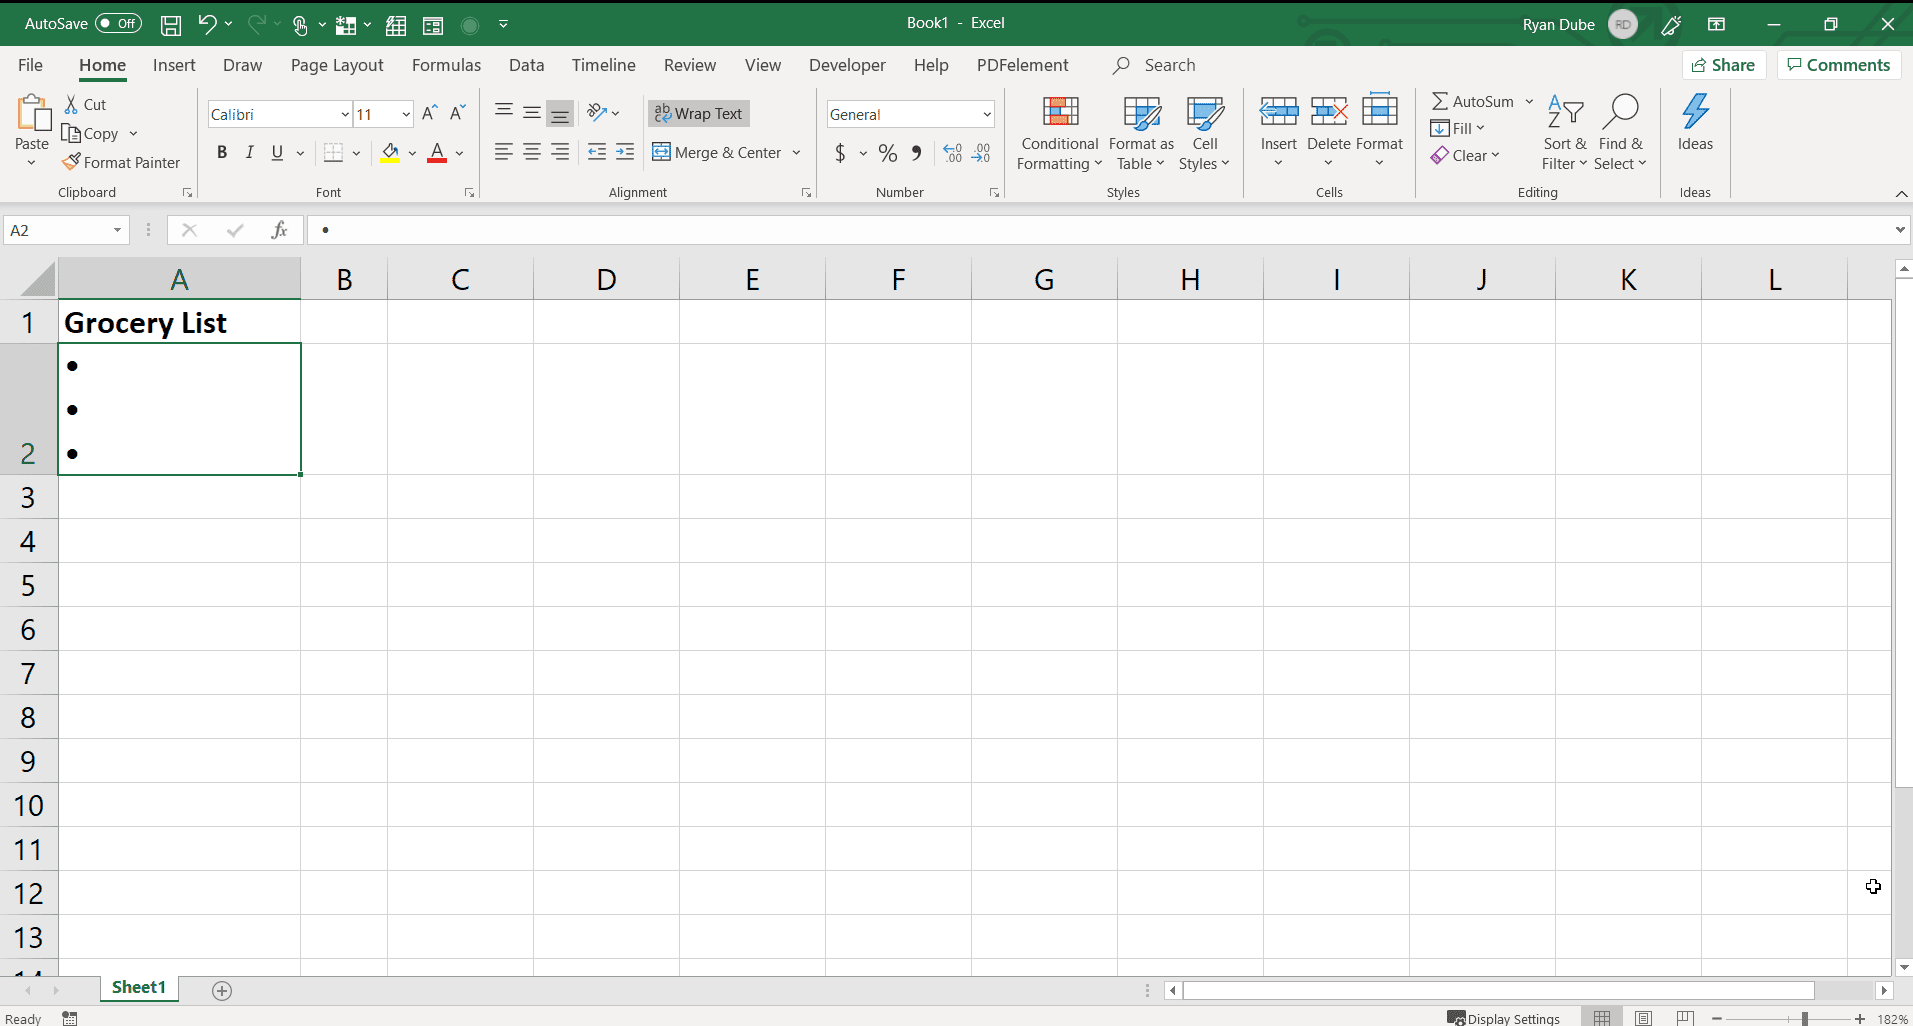 Снимок экрана с вводом нескольких пуль в одну ячейку в Excel